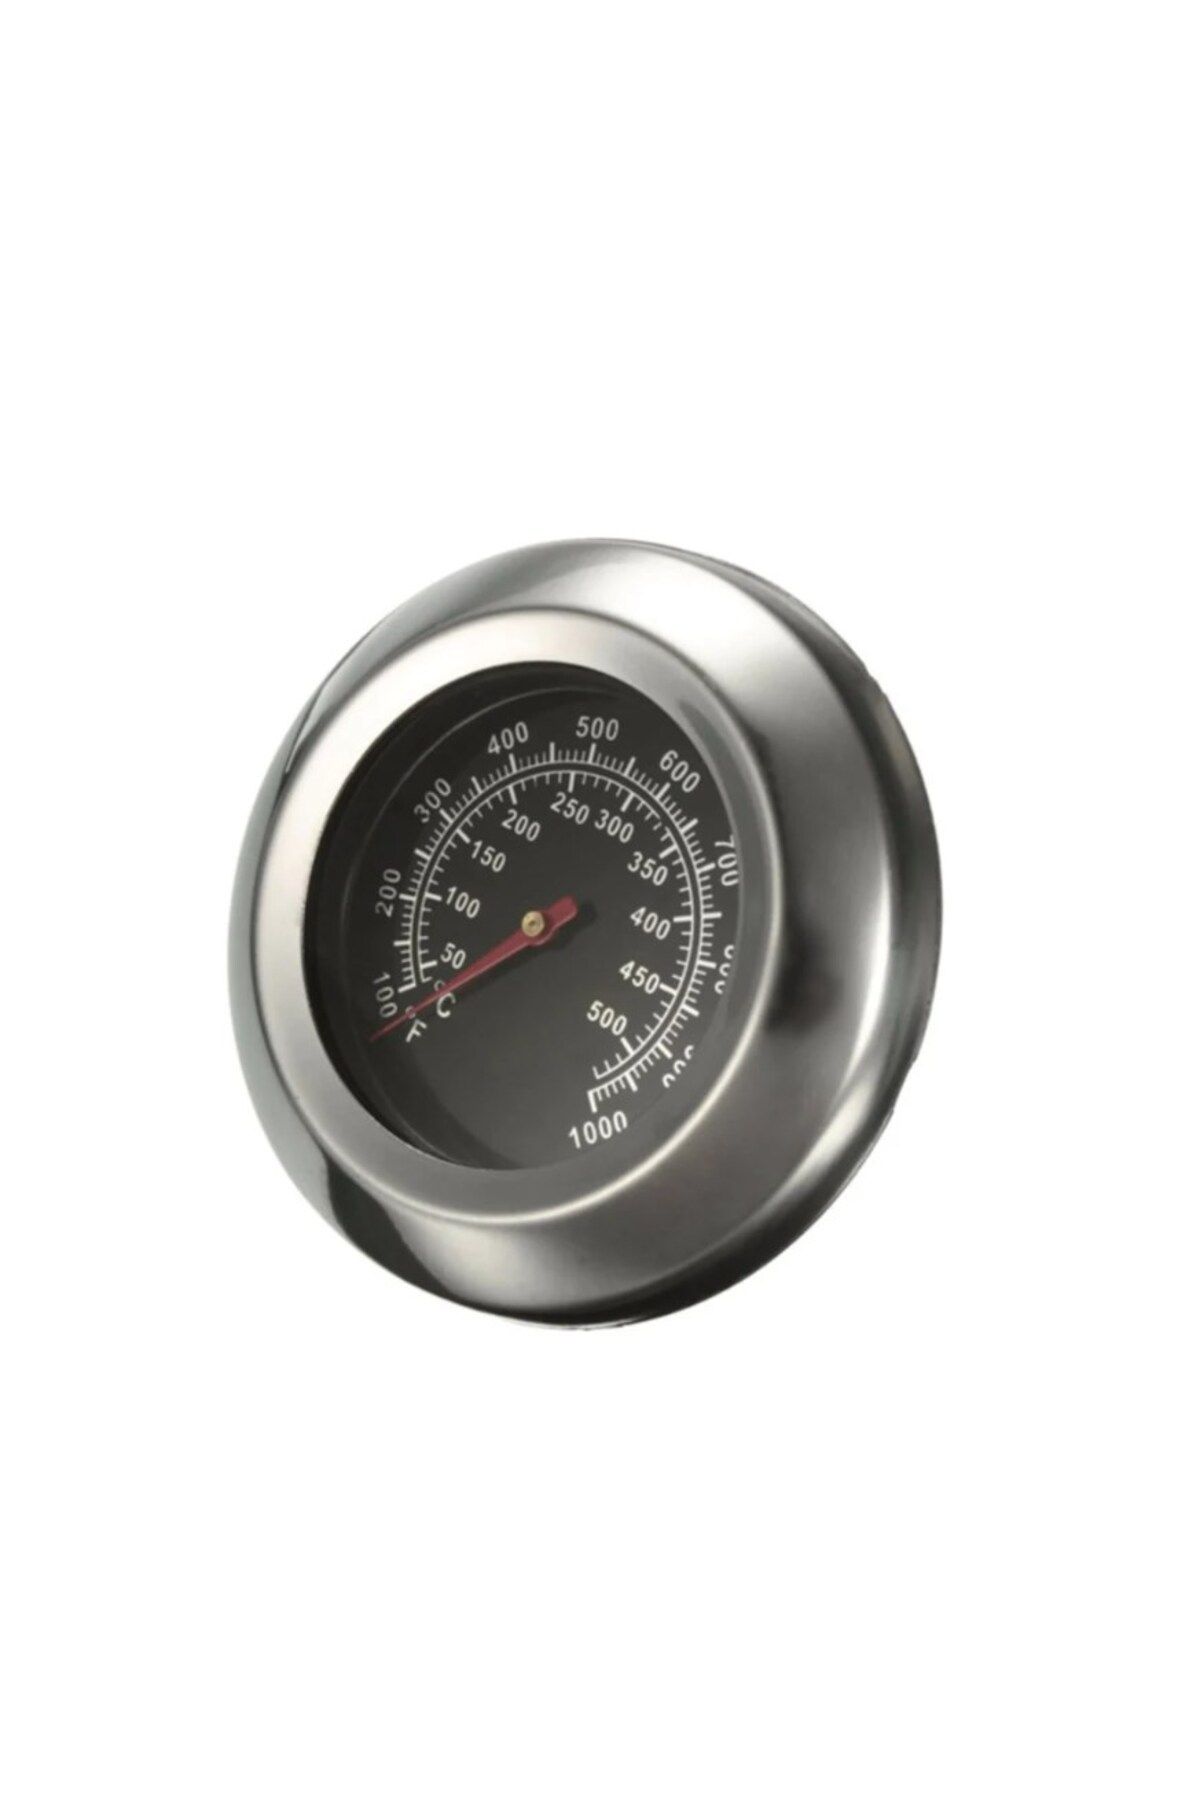 Techmaster Mangal Barbekü Fırın Termometresi Sıcaklık Ölçer 40-530 Derece